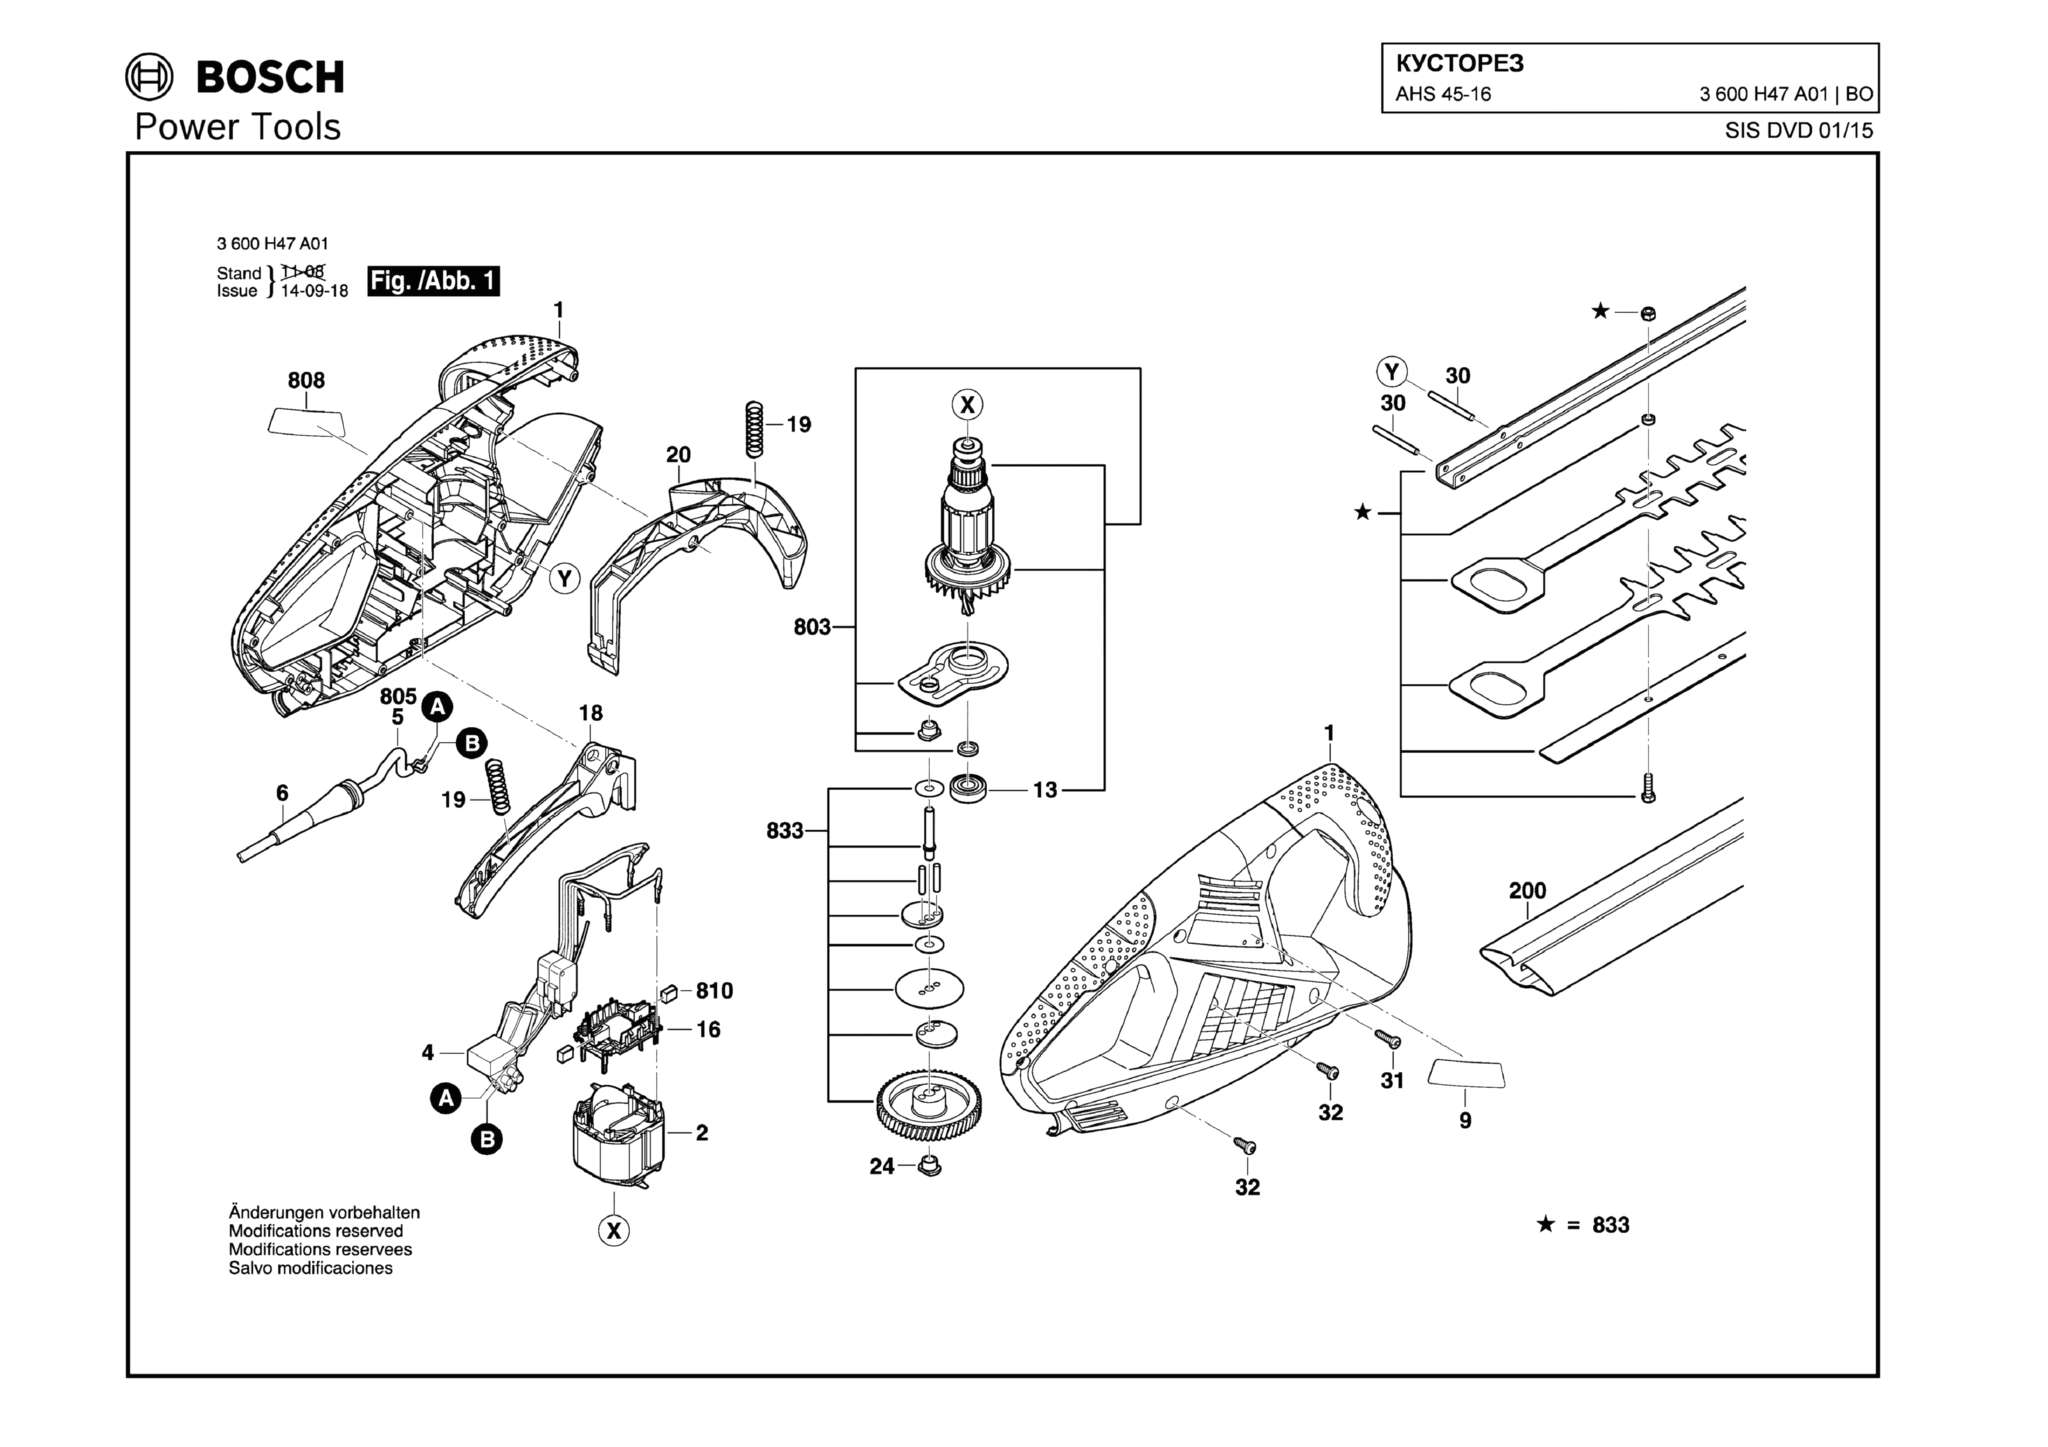 Запчасти, схема и деталировка Bosch AHS 45-16 (ТИП 3600H47A01)